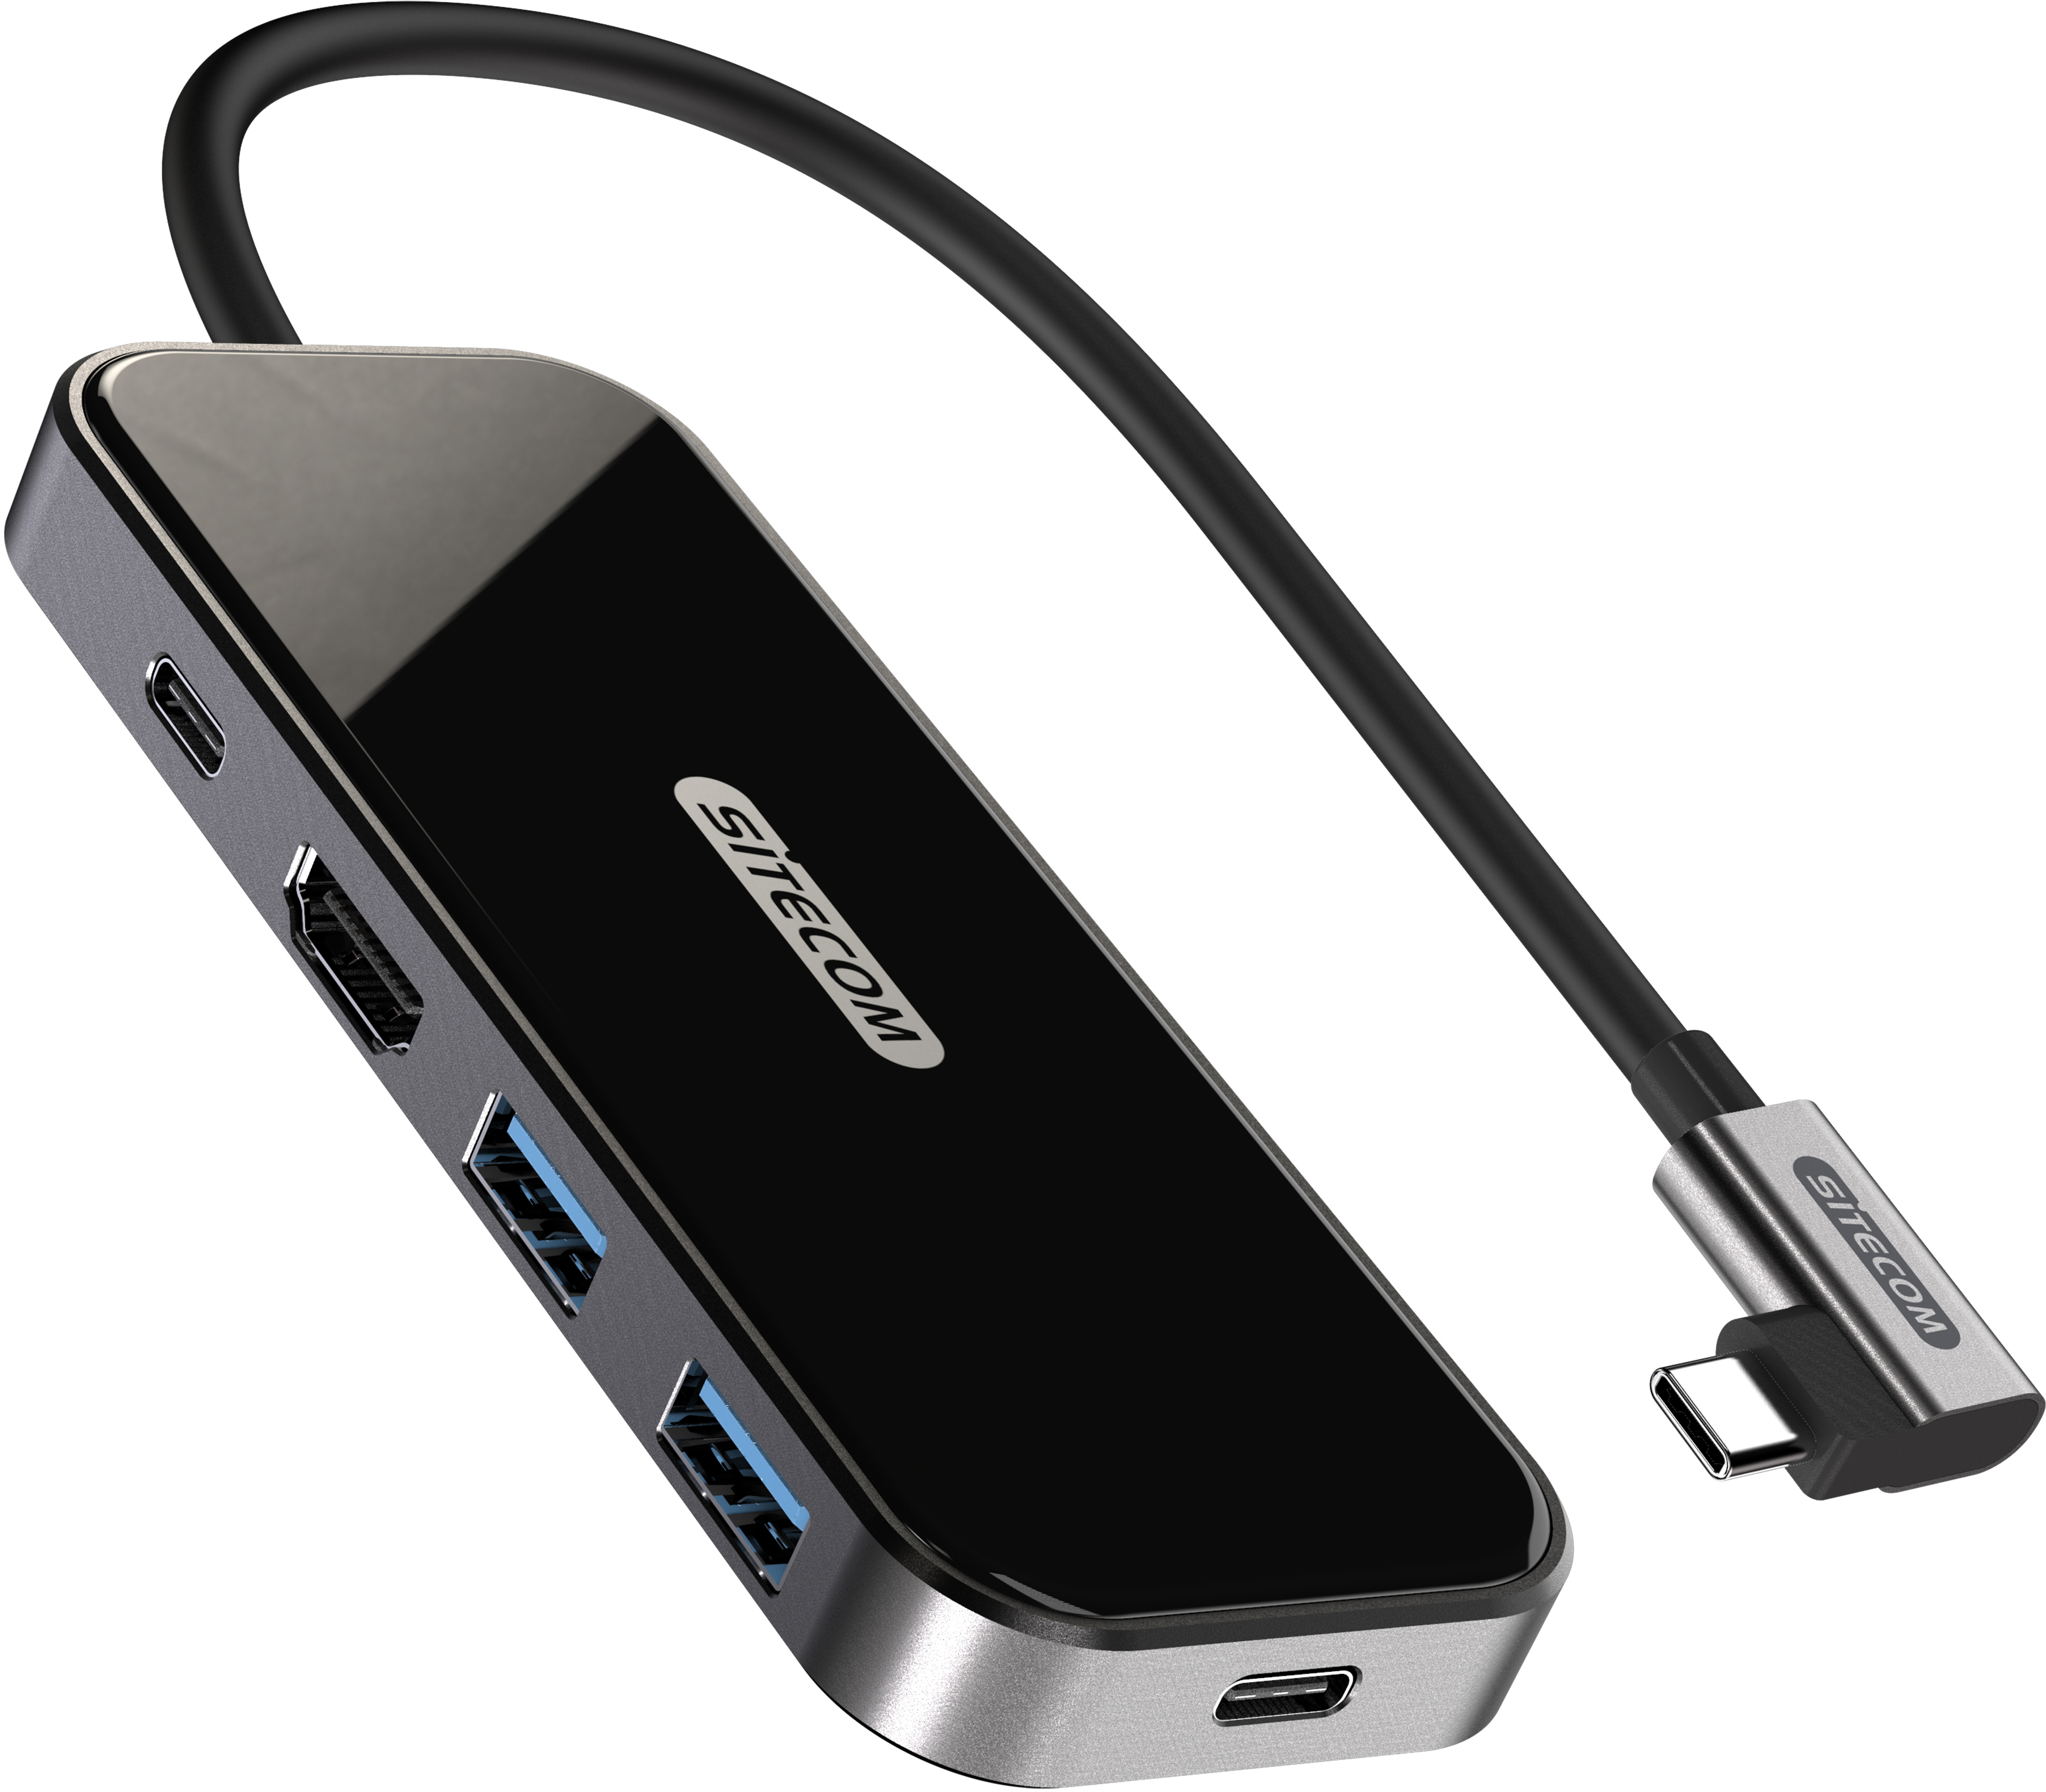 SITECOM USB-C to HDMI Adapter 1x USB-C CN-408 2x USB-A, 4K USB-C PD